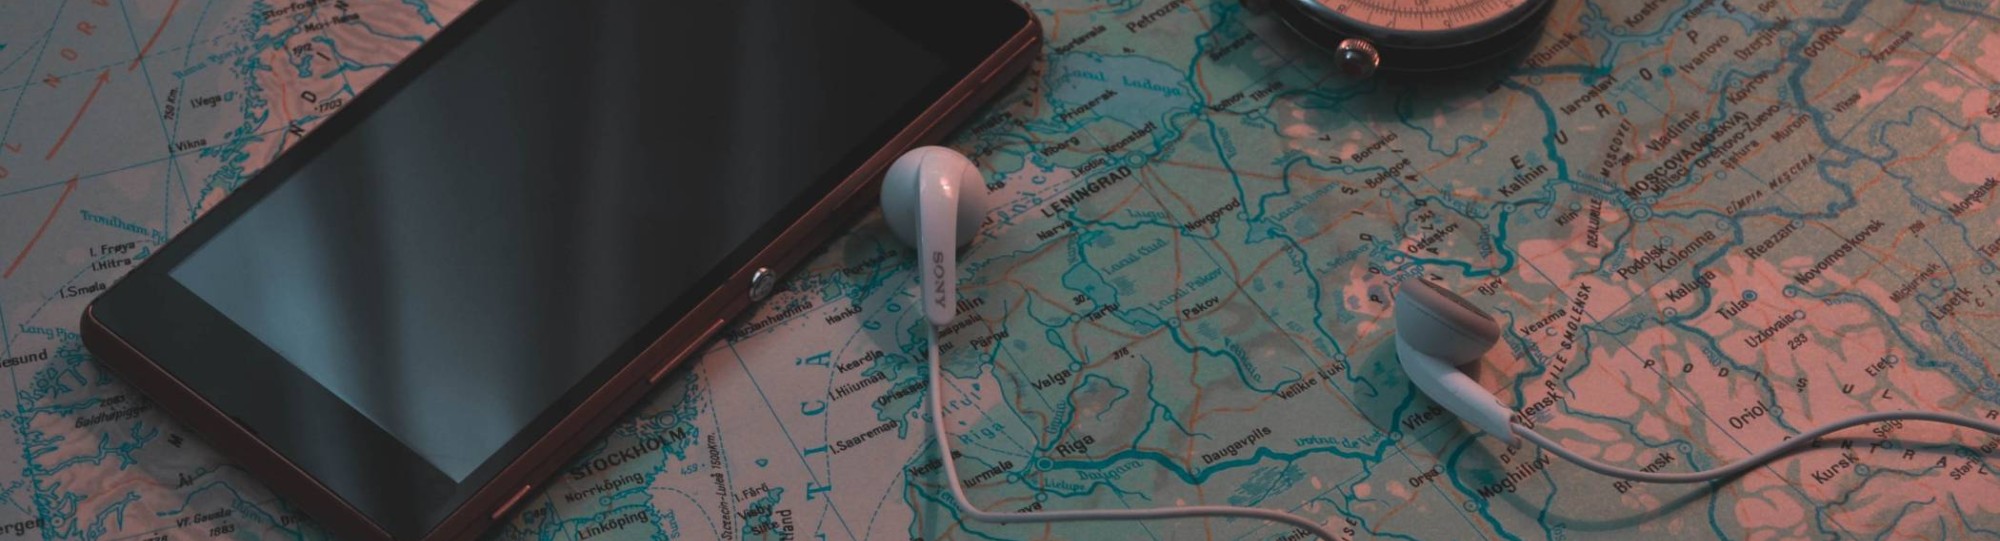 Smartphone ligt op landkaart met kompas en oordopjes